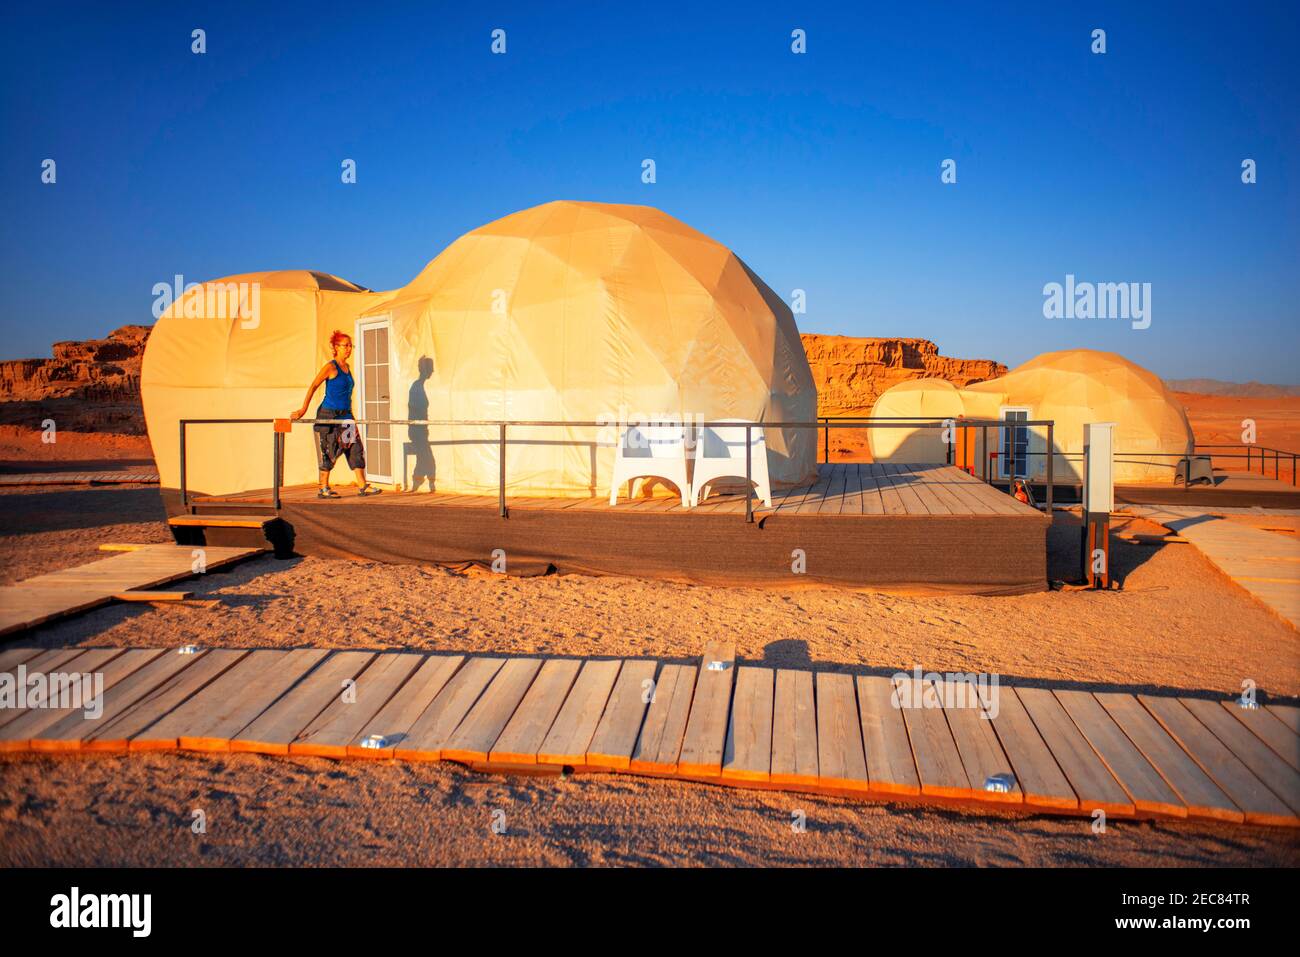 Mazayen Rum Camp Schaumzelte kuppelförmigen Hotelzimmern Der Stil von Ridley Scotts Film The Martian gruppierte sich Im SunCity Camp in Wadi Rum Nat Stockfoto